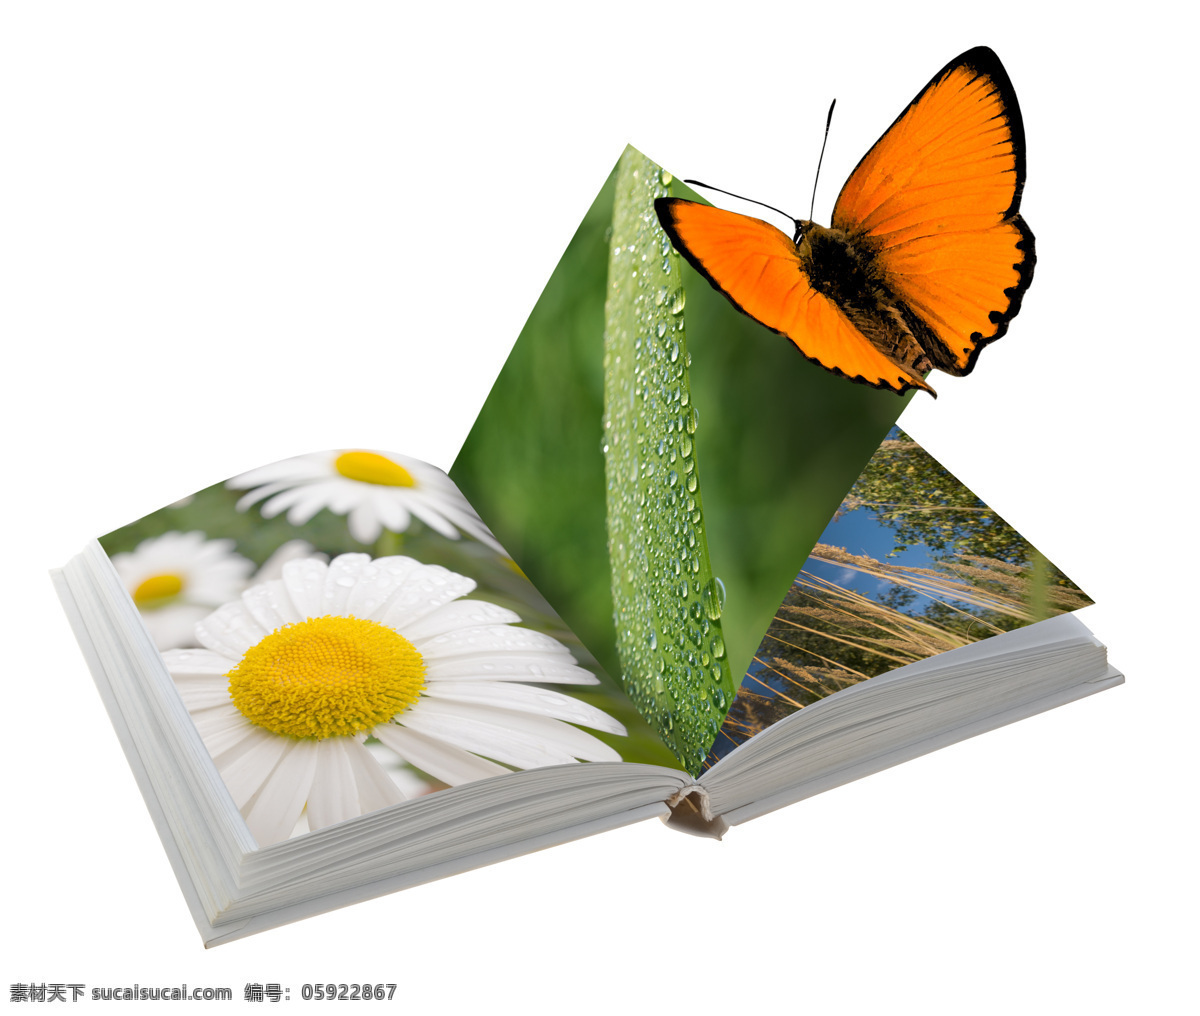 蝴蝶 书本 翻开的书 学习 知识 创意 抽象 花朵 鲜花 书本图片 生活百科